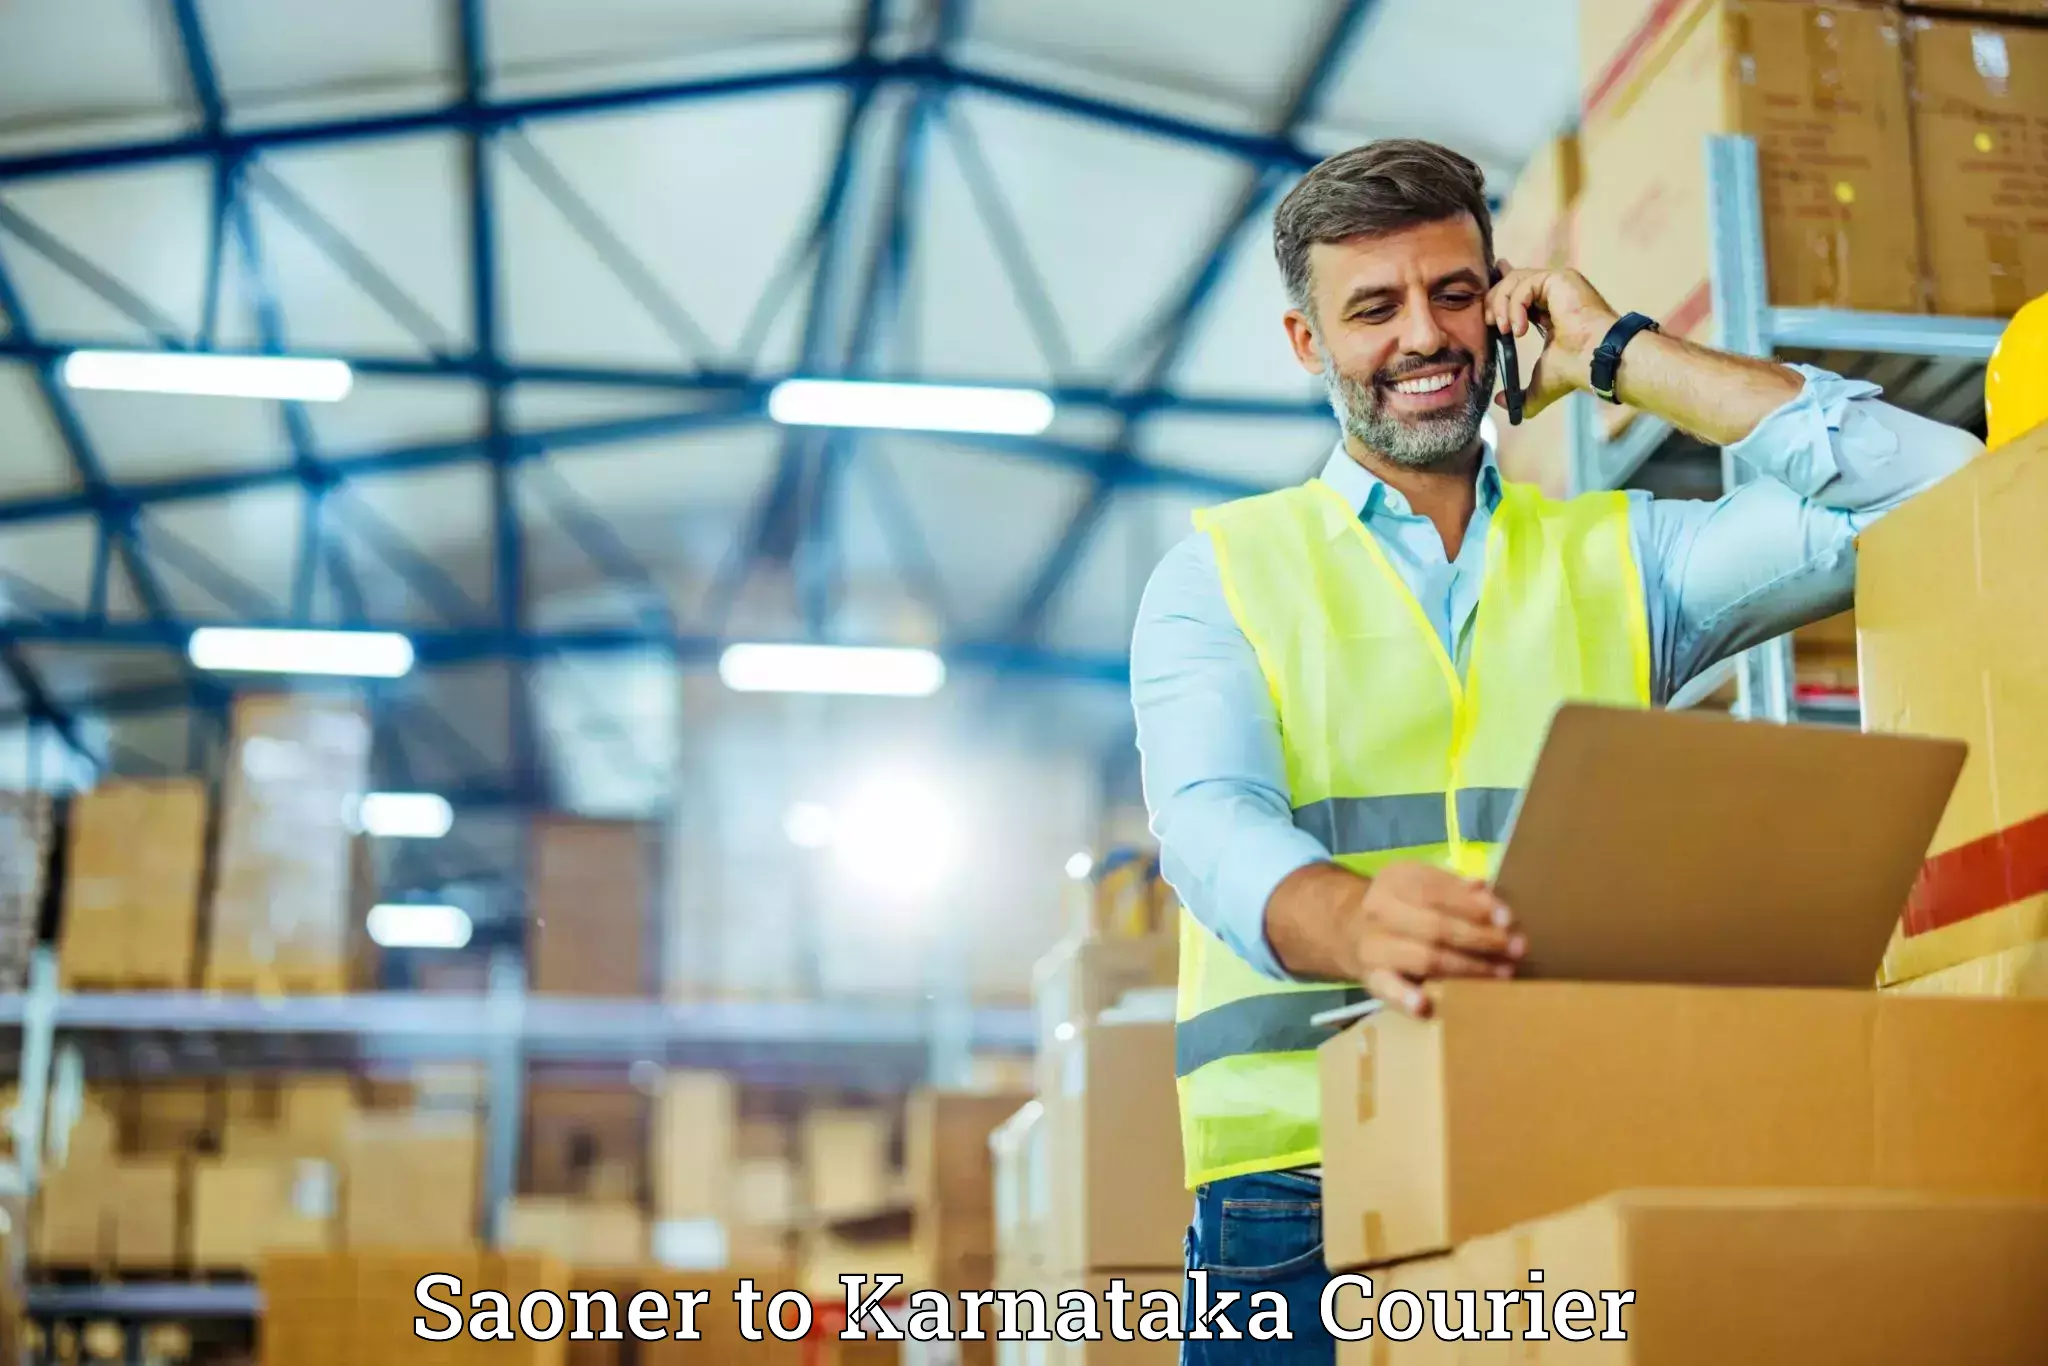 Luggage delivery app Saoner to Karnataka